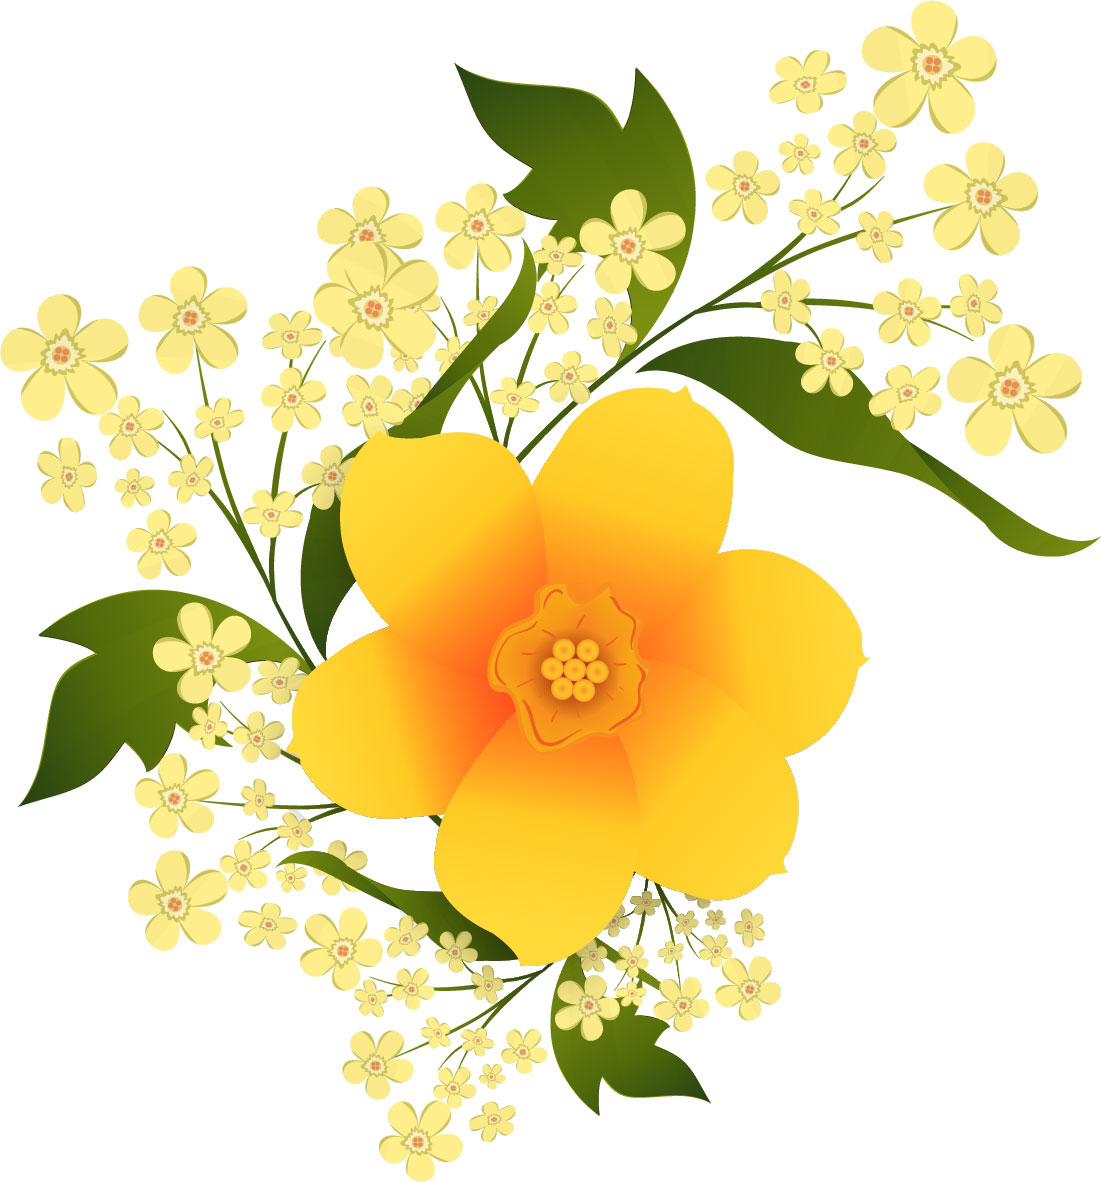 黄色い花のイラスト フリー素材 No 195 黄オレンジ 葉